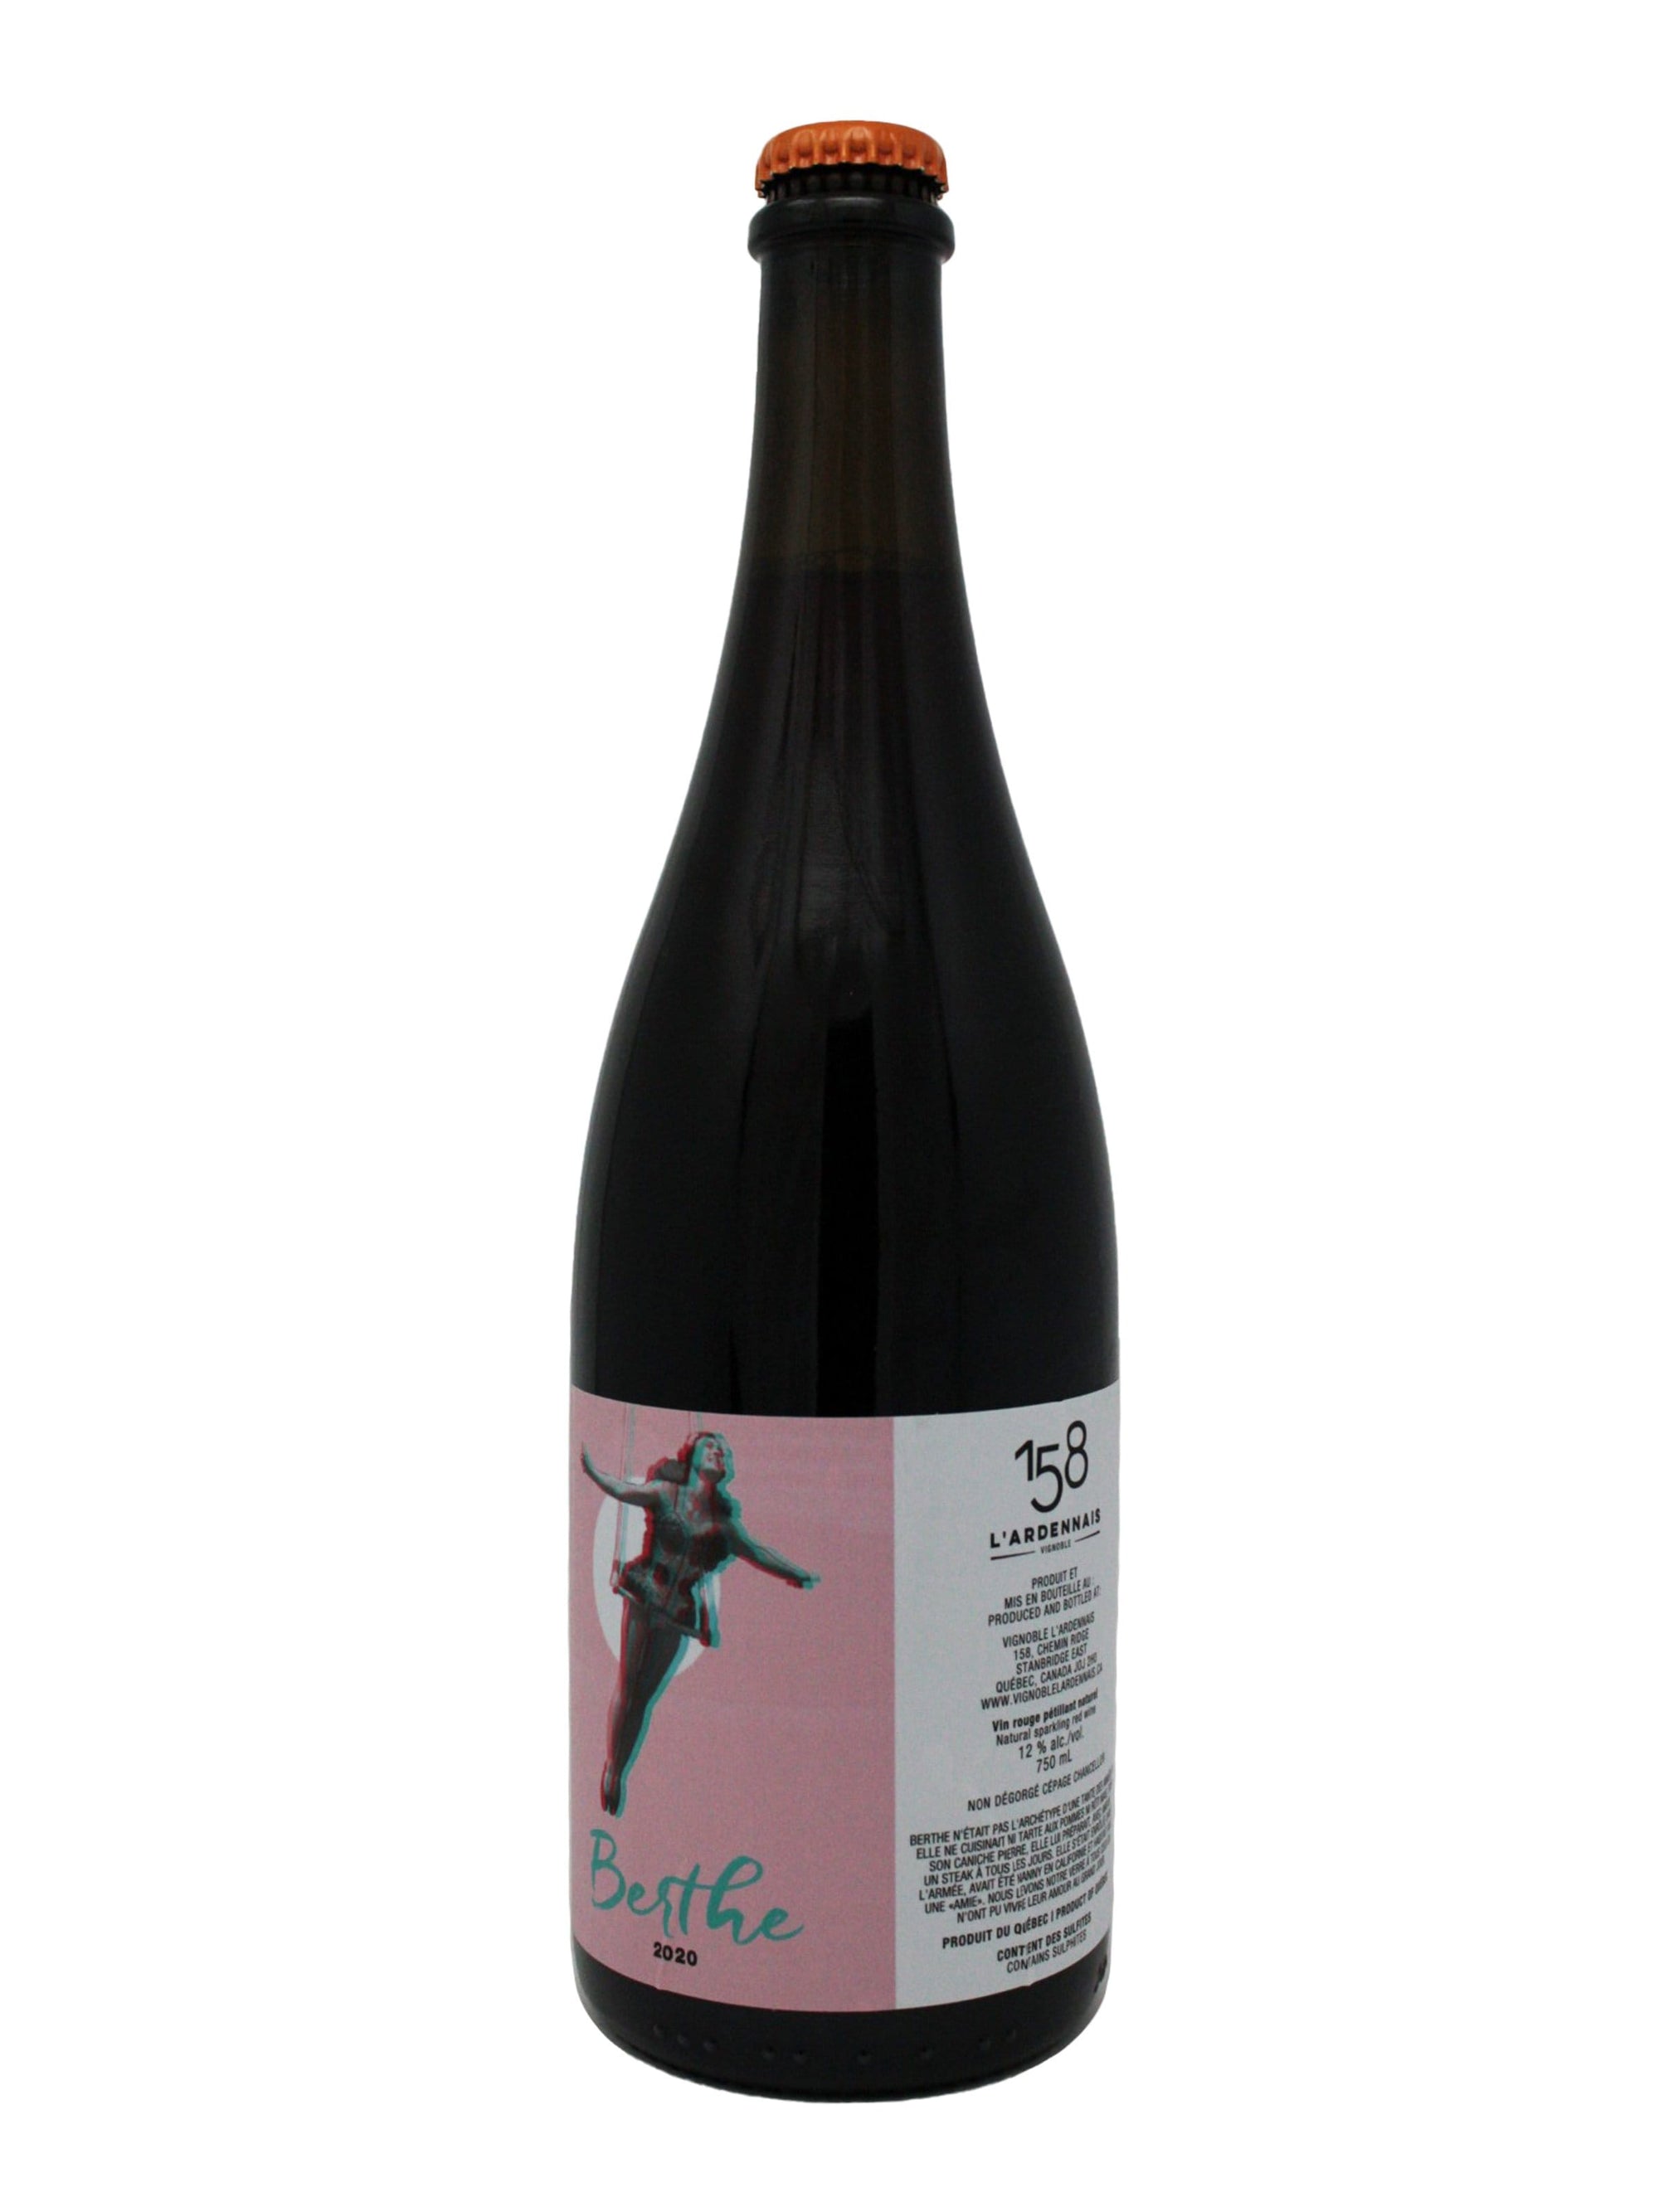 Vignoble l'Ardennais vin Berthe - Vin mousseux rouge du Vignoble l'Ardennais